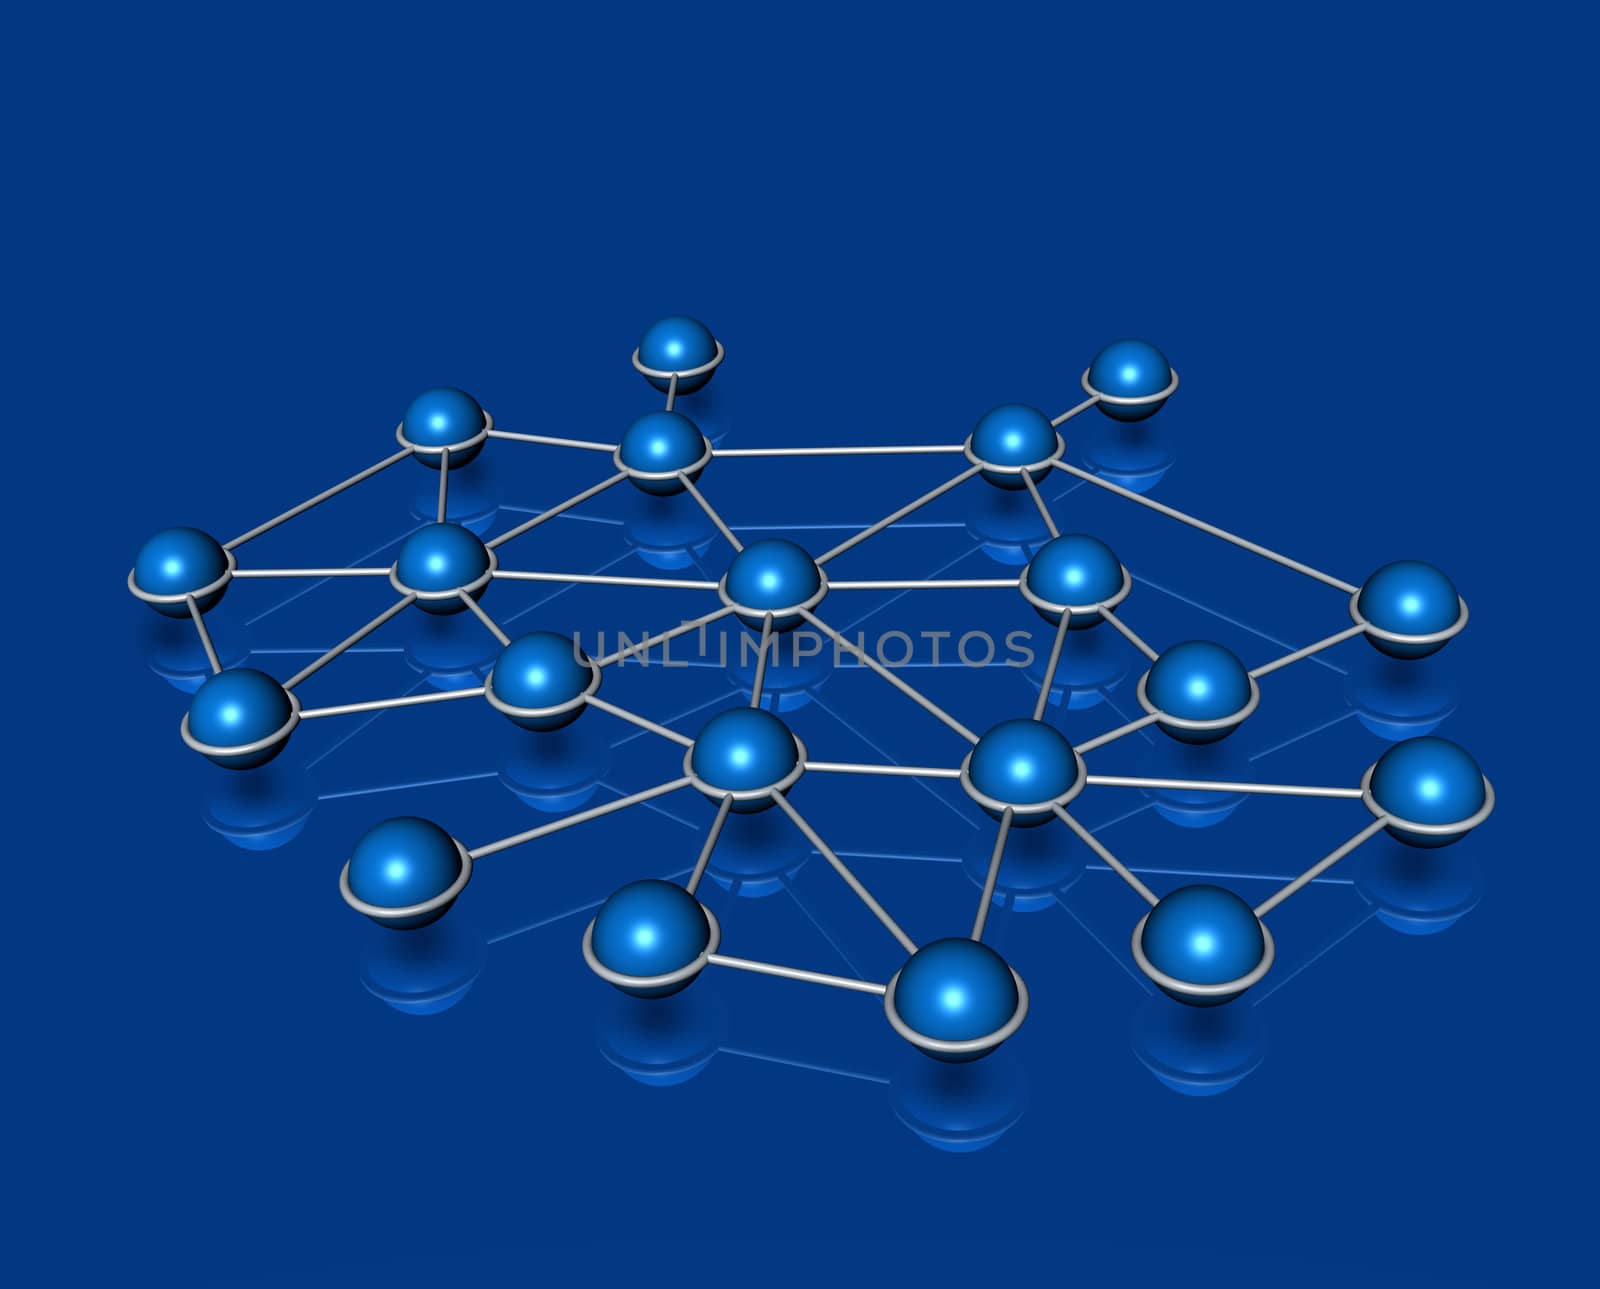 Network connection communication web concept blue